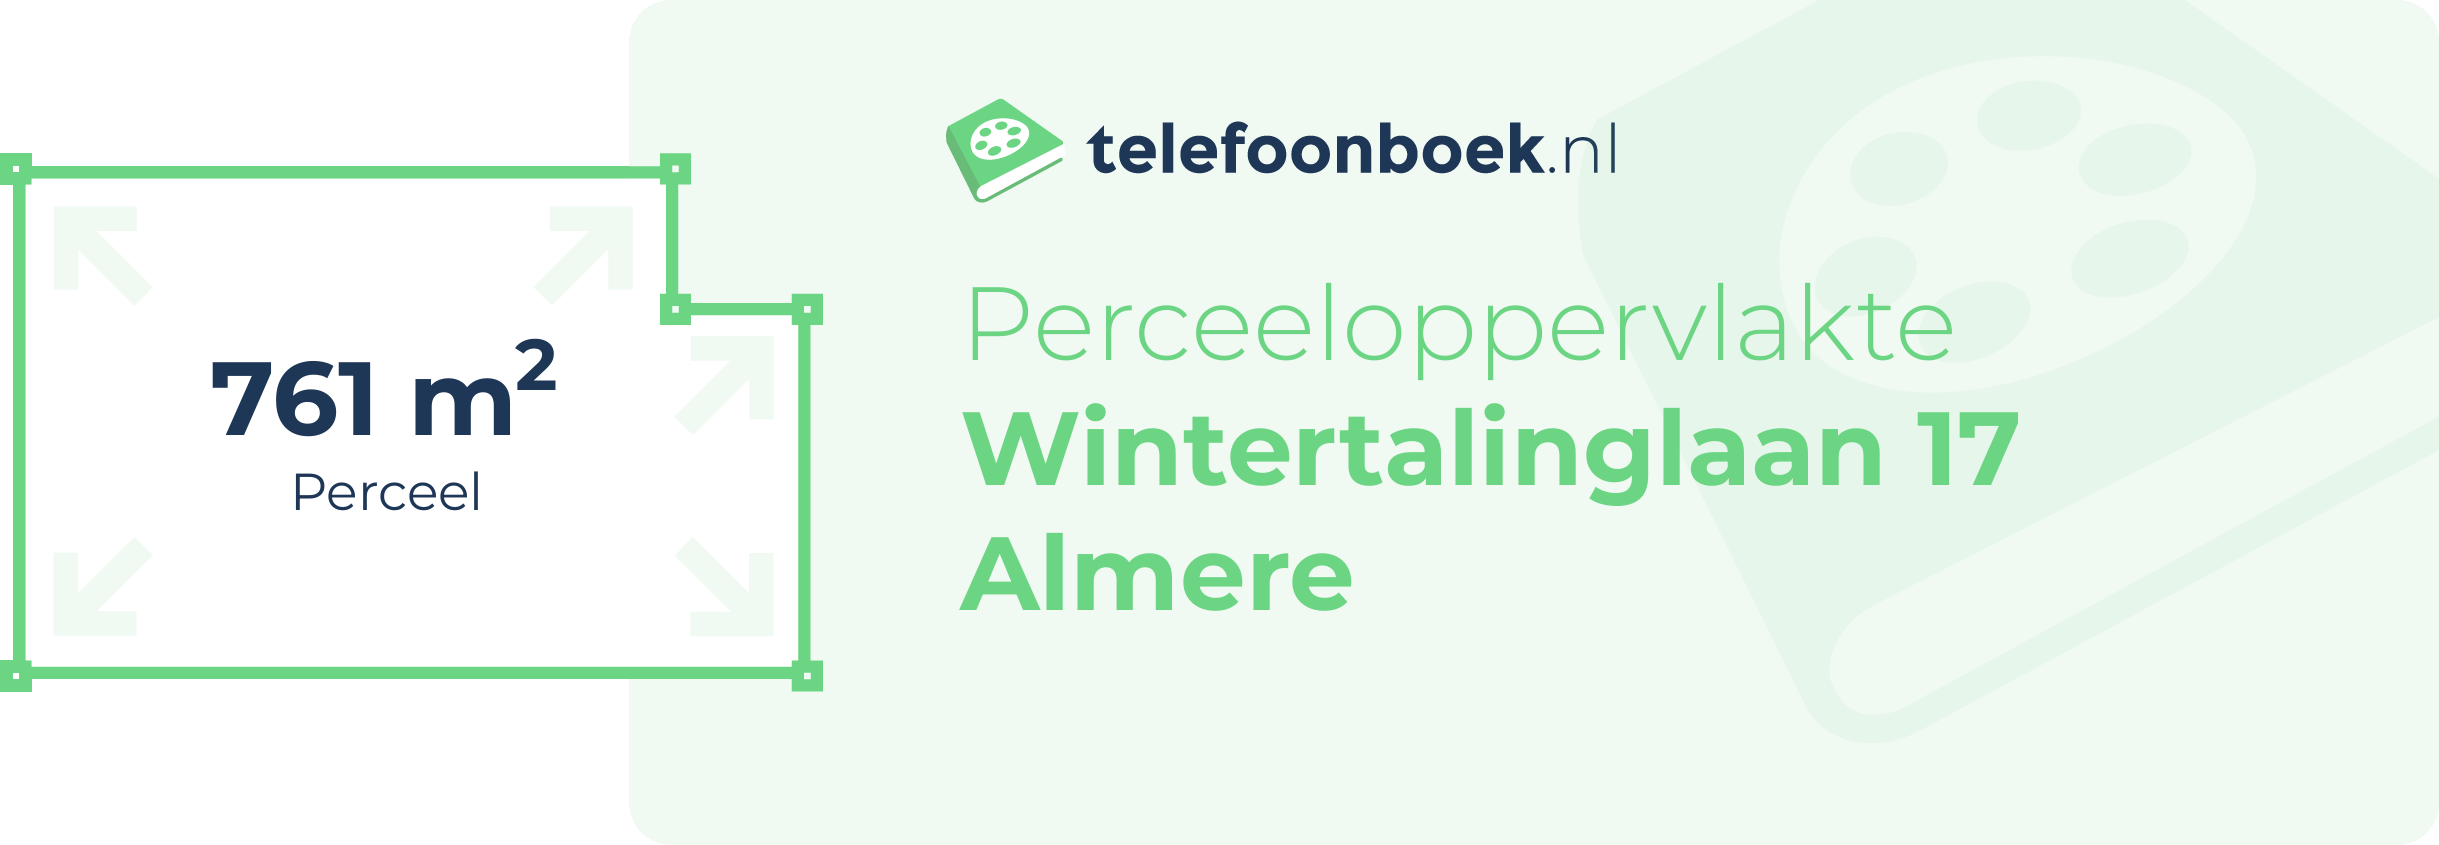 Perceeloppervlakte Wintertalinglaan 17 Almere